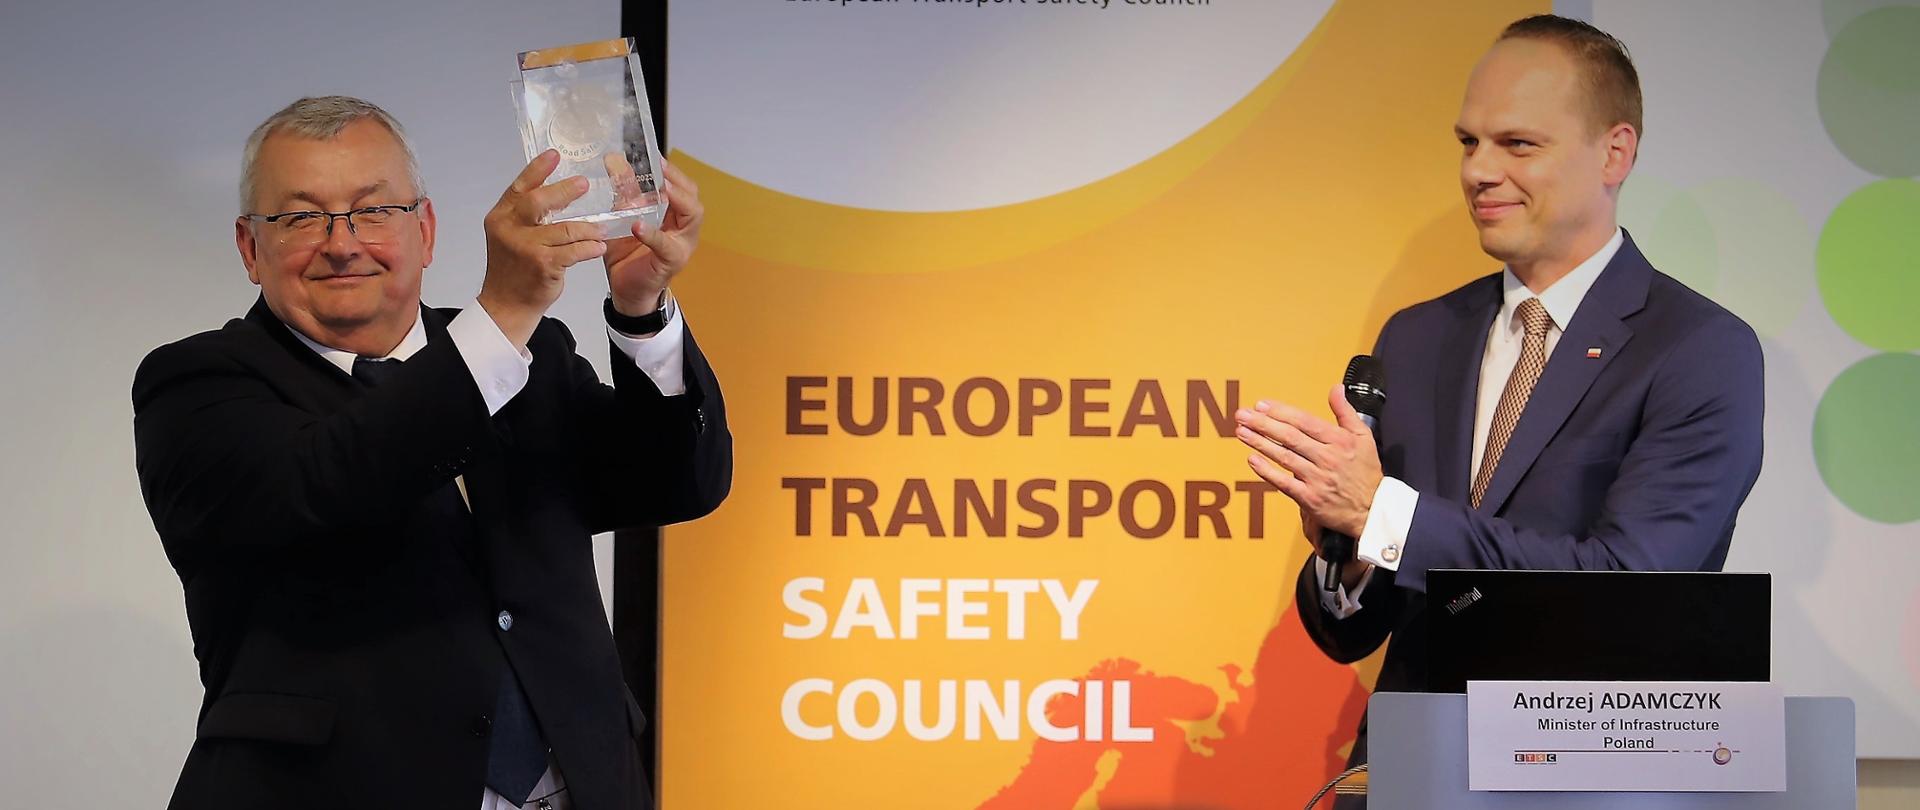 Minister infrastruktury Andrzej Adamczyk oraz wiceminister infrastruktury Rafał Weber podczas konferencji po otrzymaniu przez Polskę nagrody Europejskiej Rady Bezpieczeństwa Transportu (ETSC) Road Safety Performance Index (PIN) Award